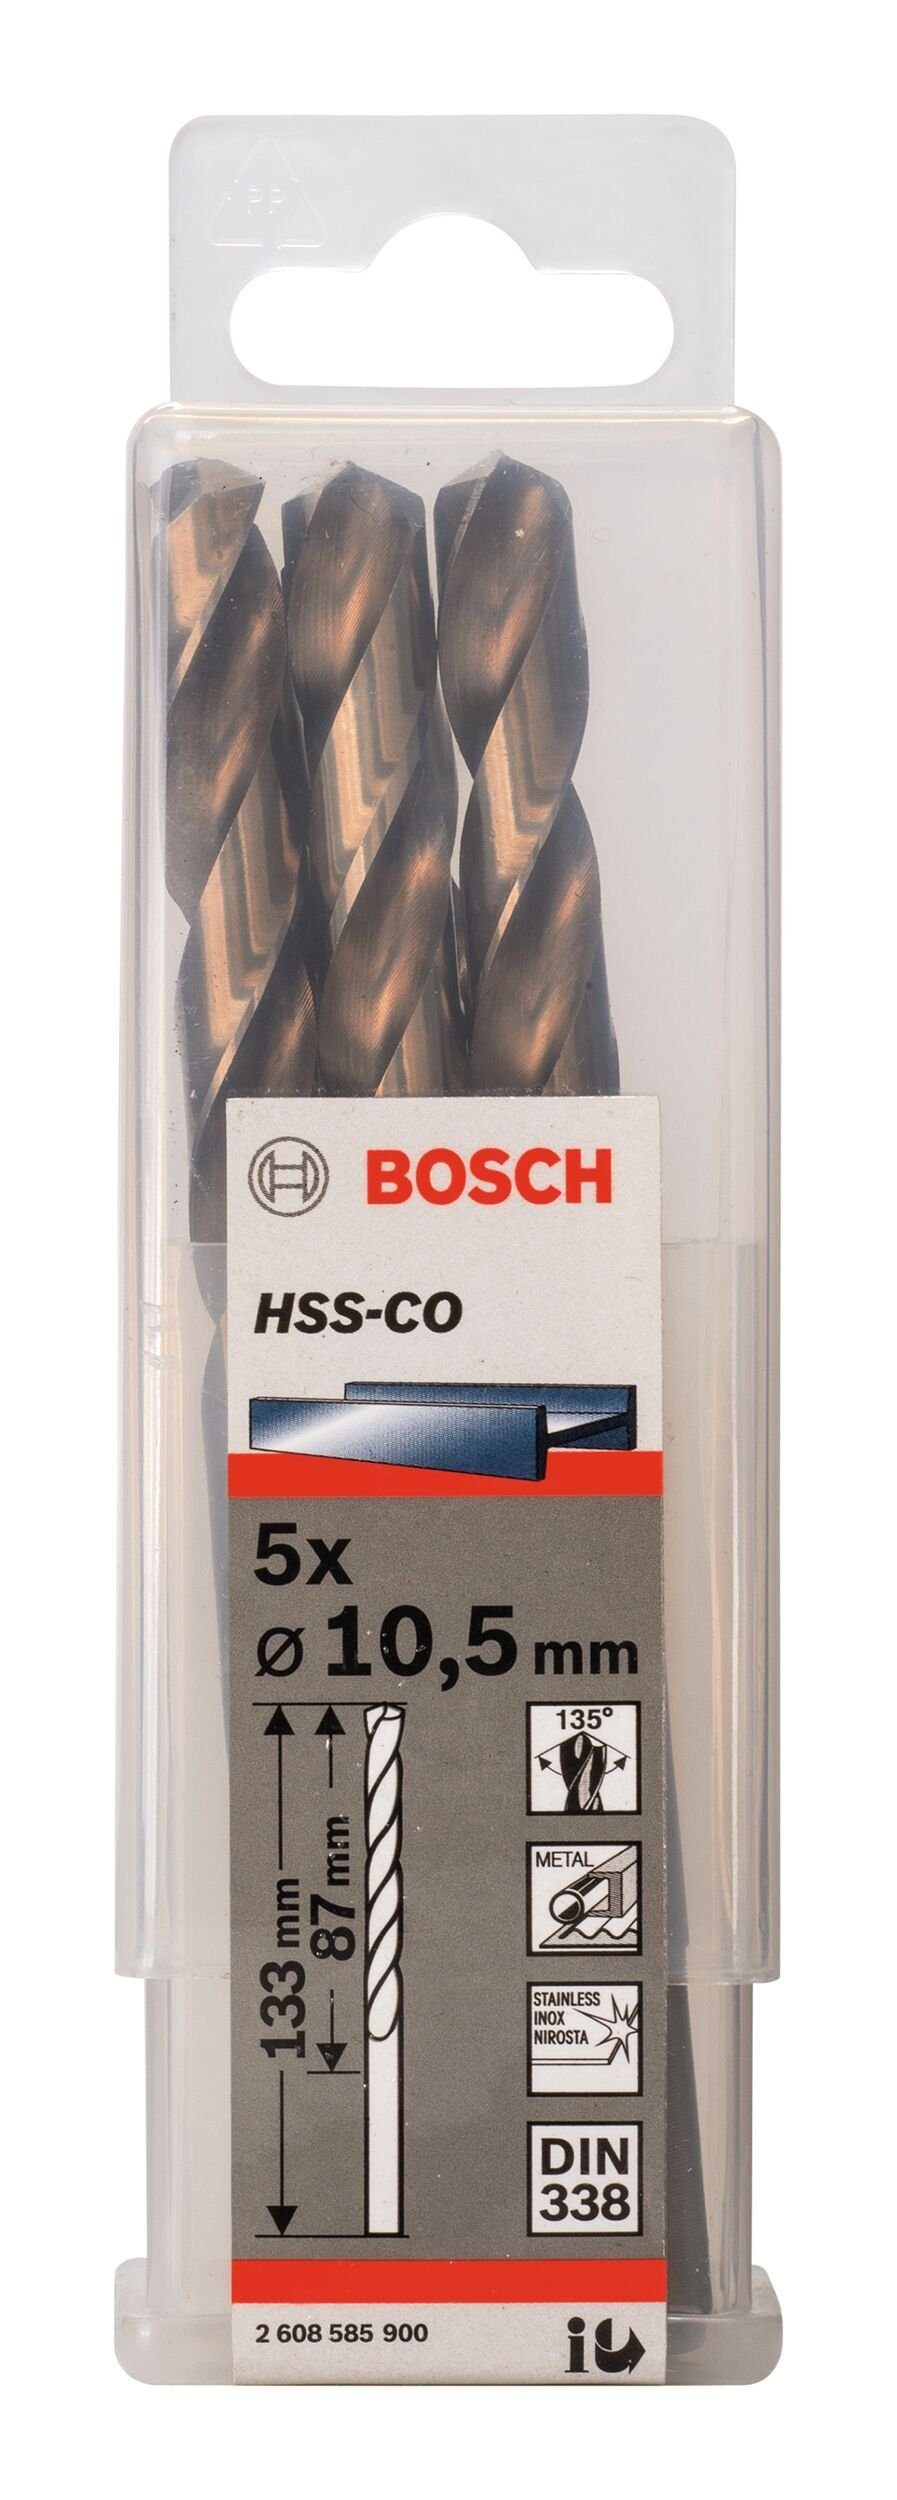 Stück), mm - BOSCH 133 87 10,5 (DIN x x HSS-Co Metallbohrer, 5er-Pack - 338) (5